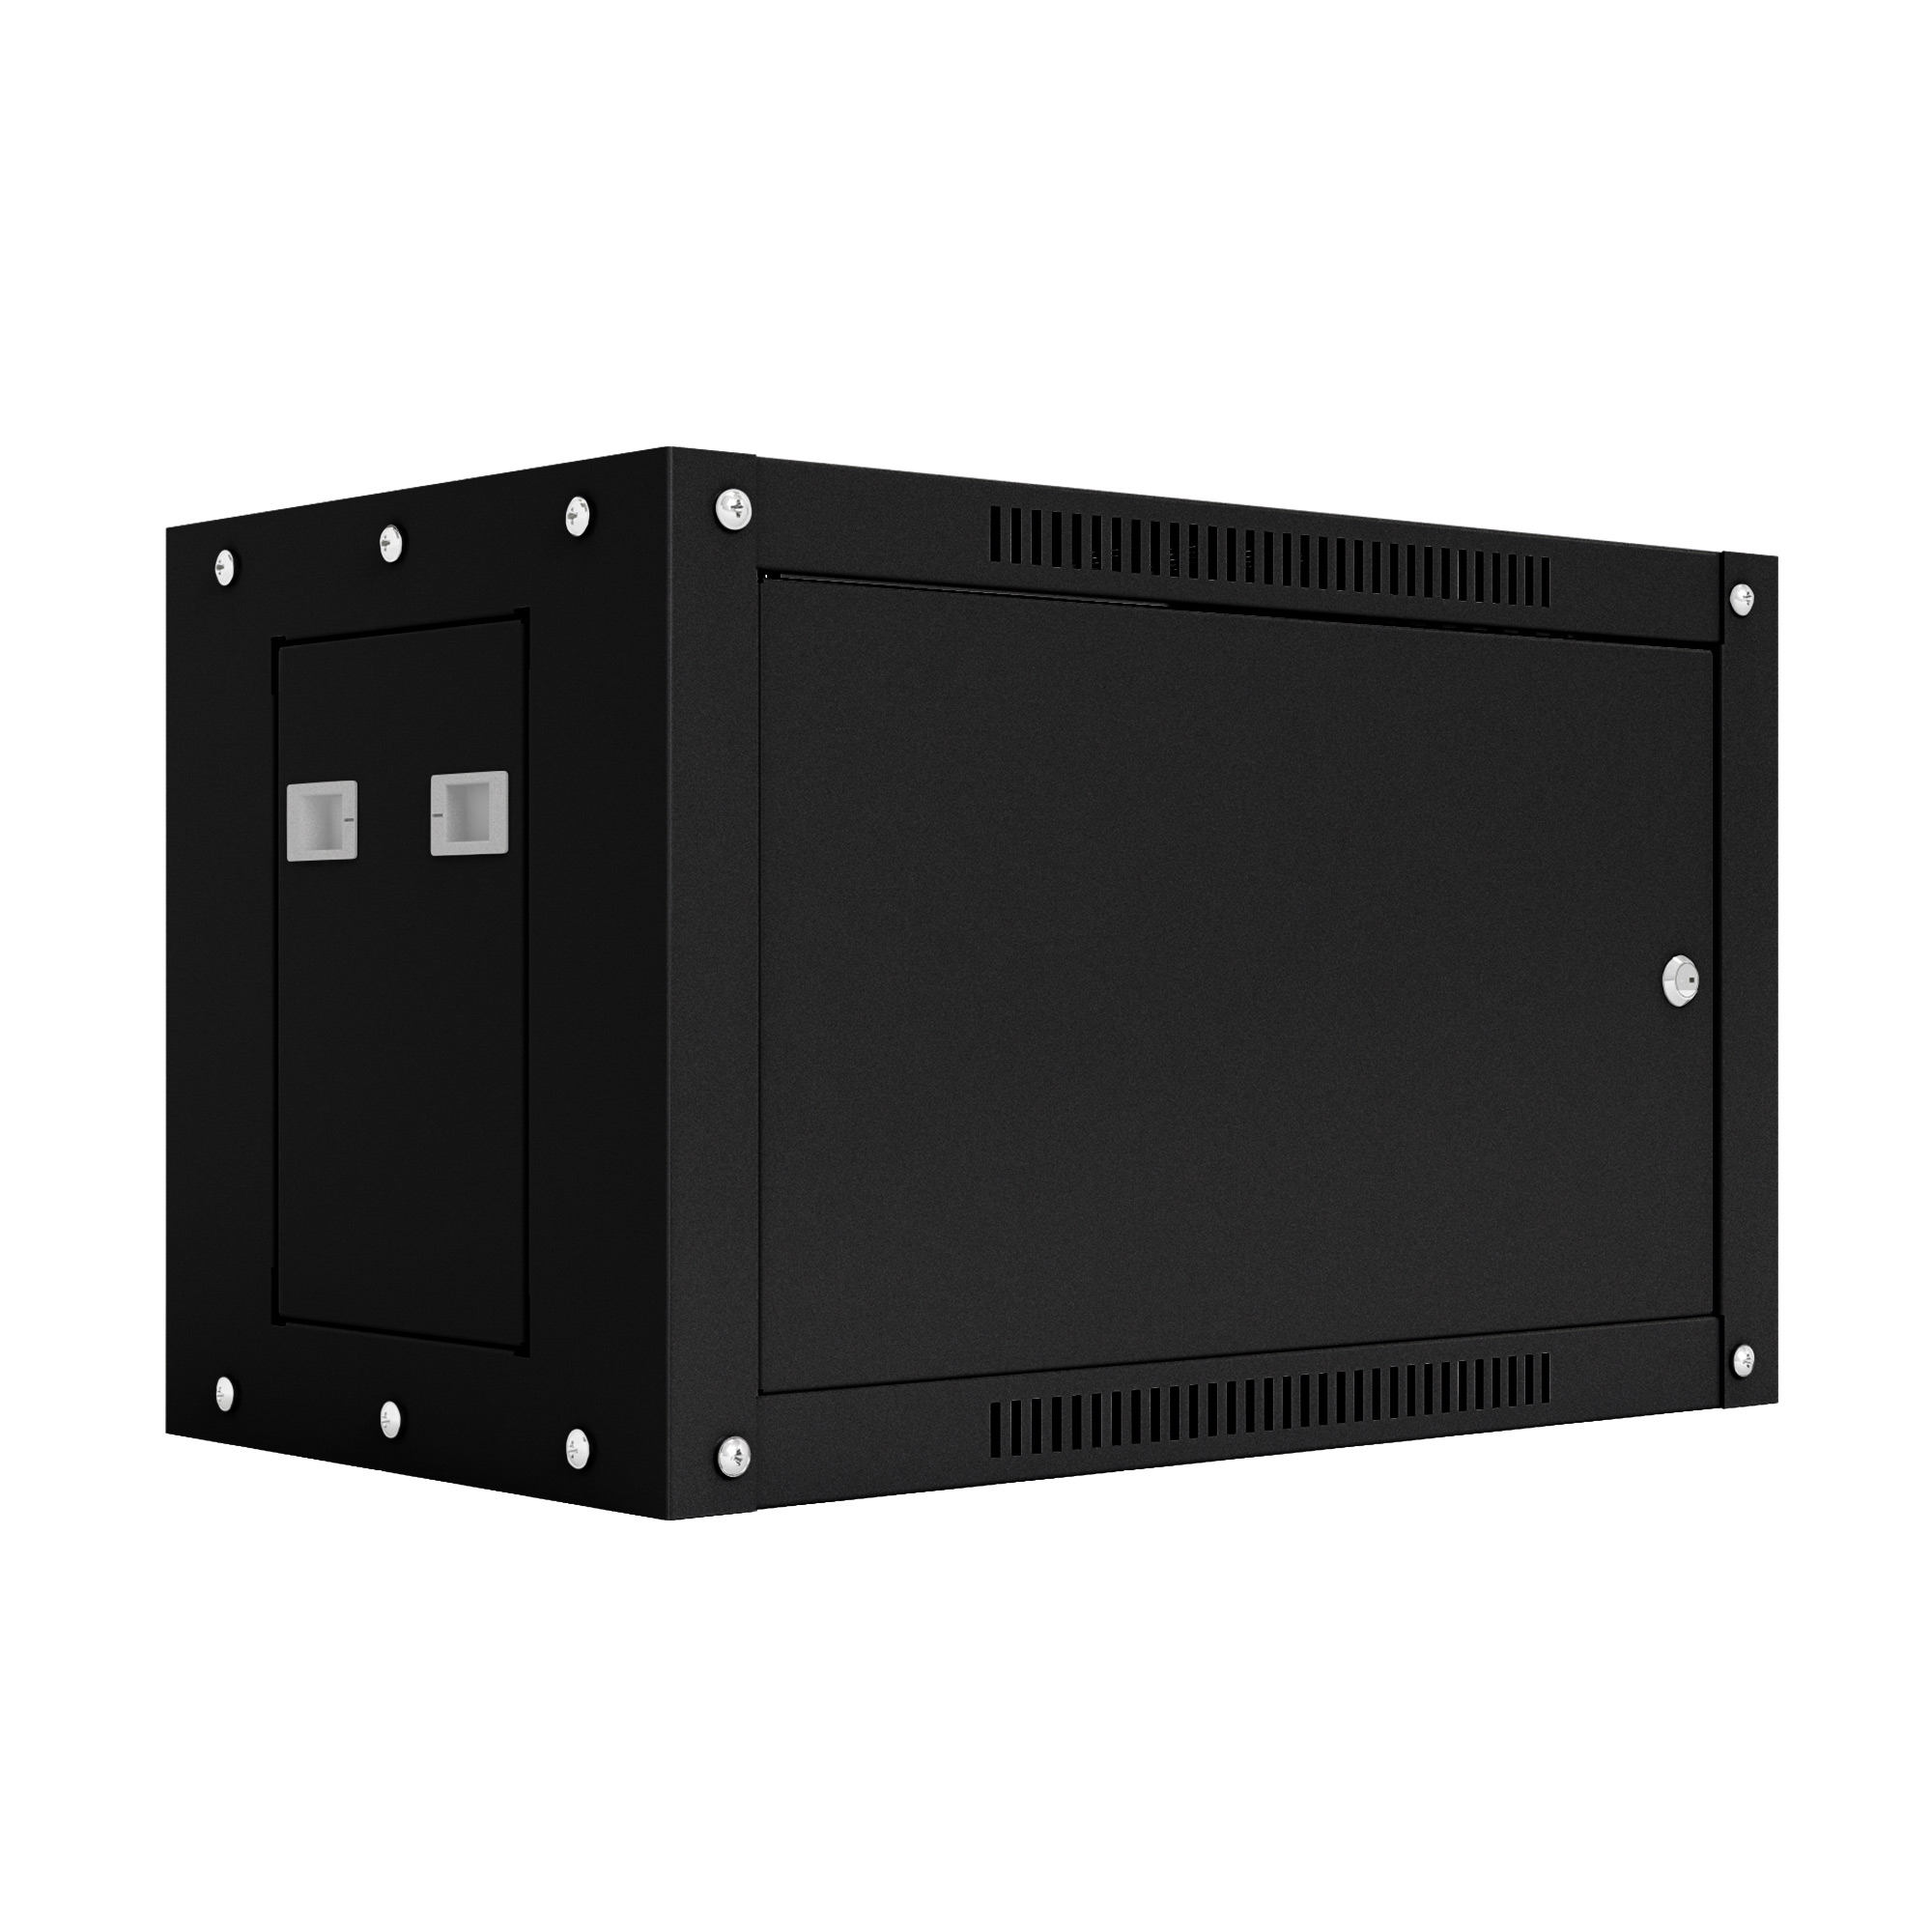 Шкаф настенный телекоммуникационный NTSS WS 12U 600х450х635мм, 2 профиля 19, дверь сплошная металл, боковые стенки съемные, разобранный, черный RAL 9005